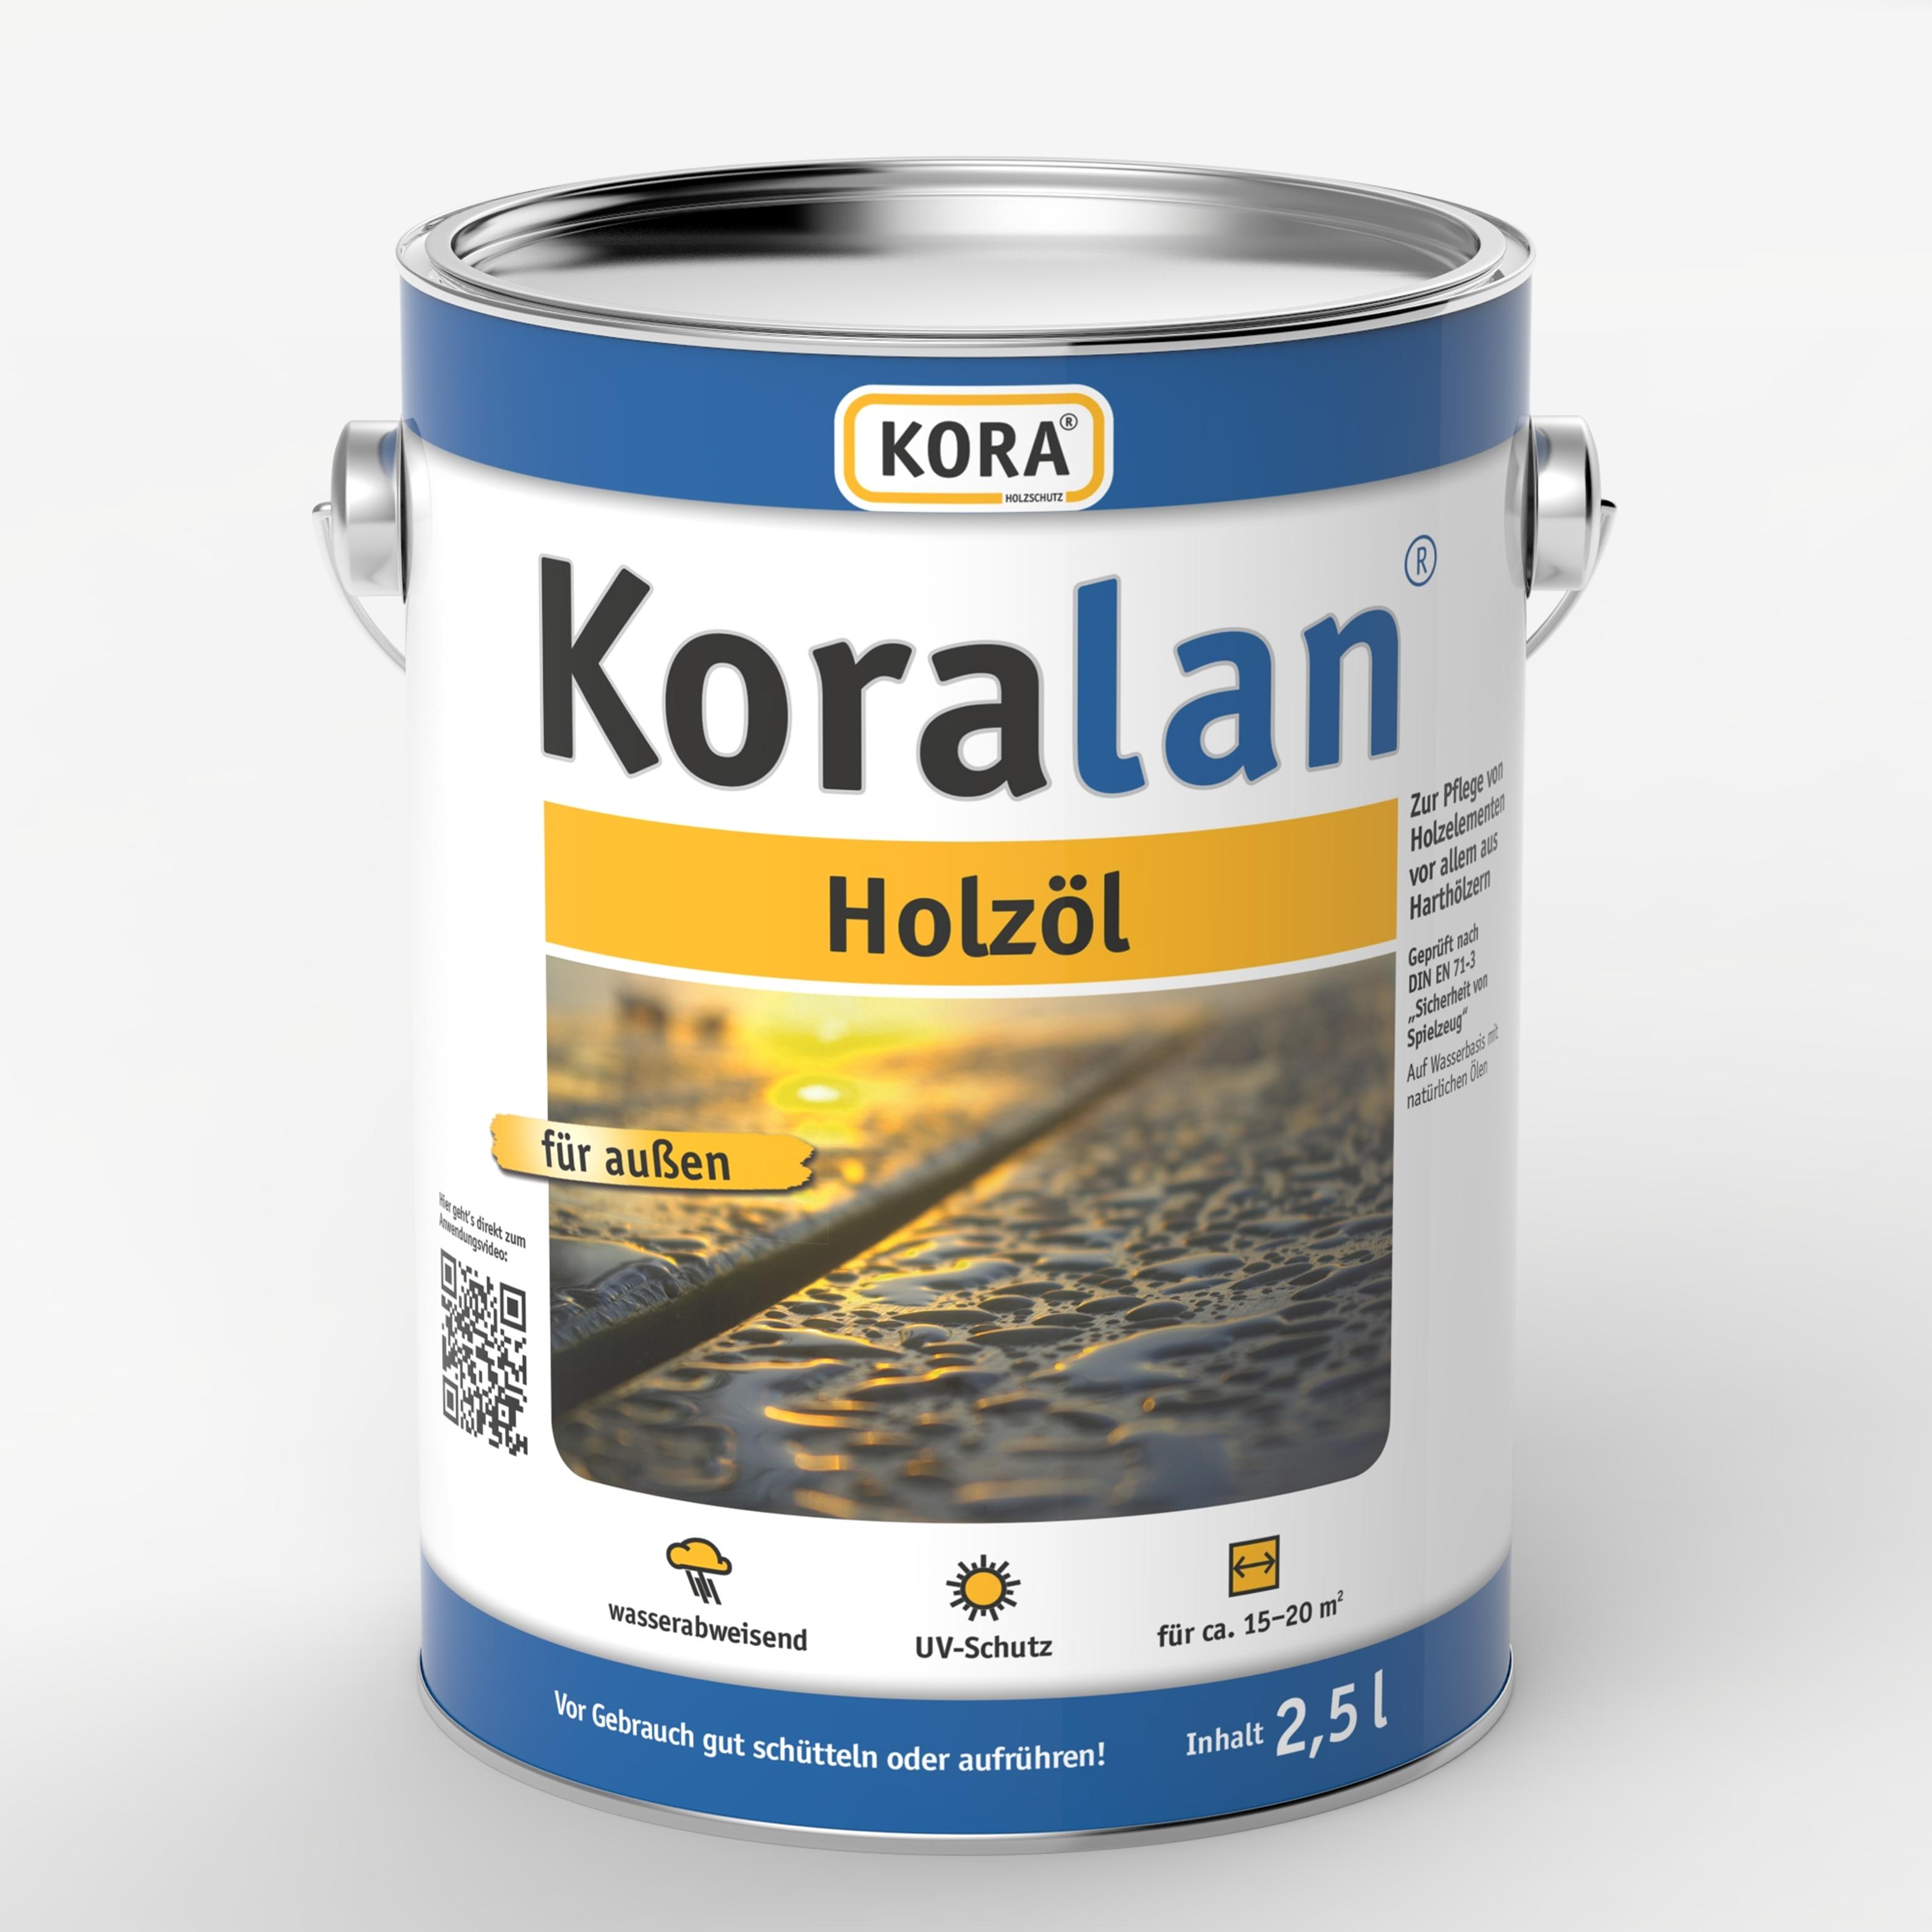 koralan-holzoel-spezial-holzschutzmittel-750ml-2500ml-obermeier.jpg_product_product_product